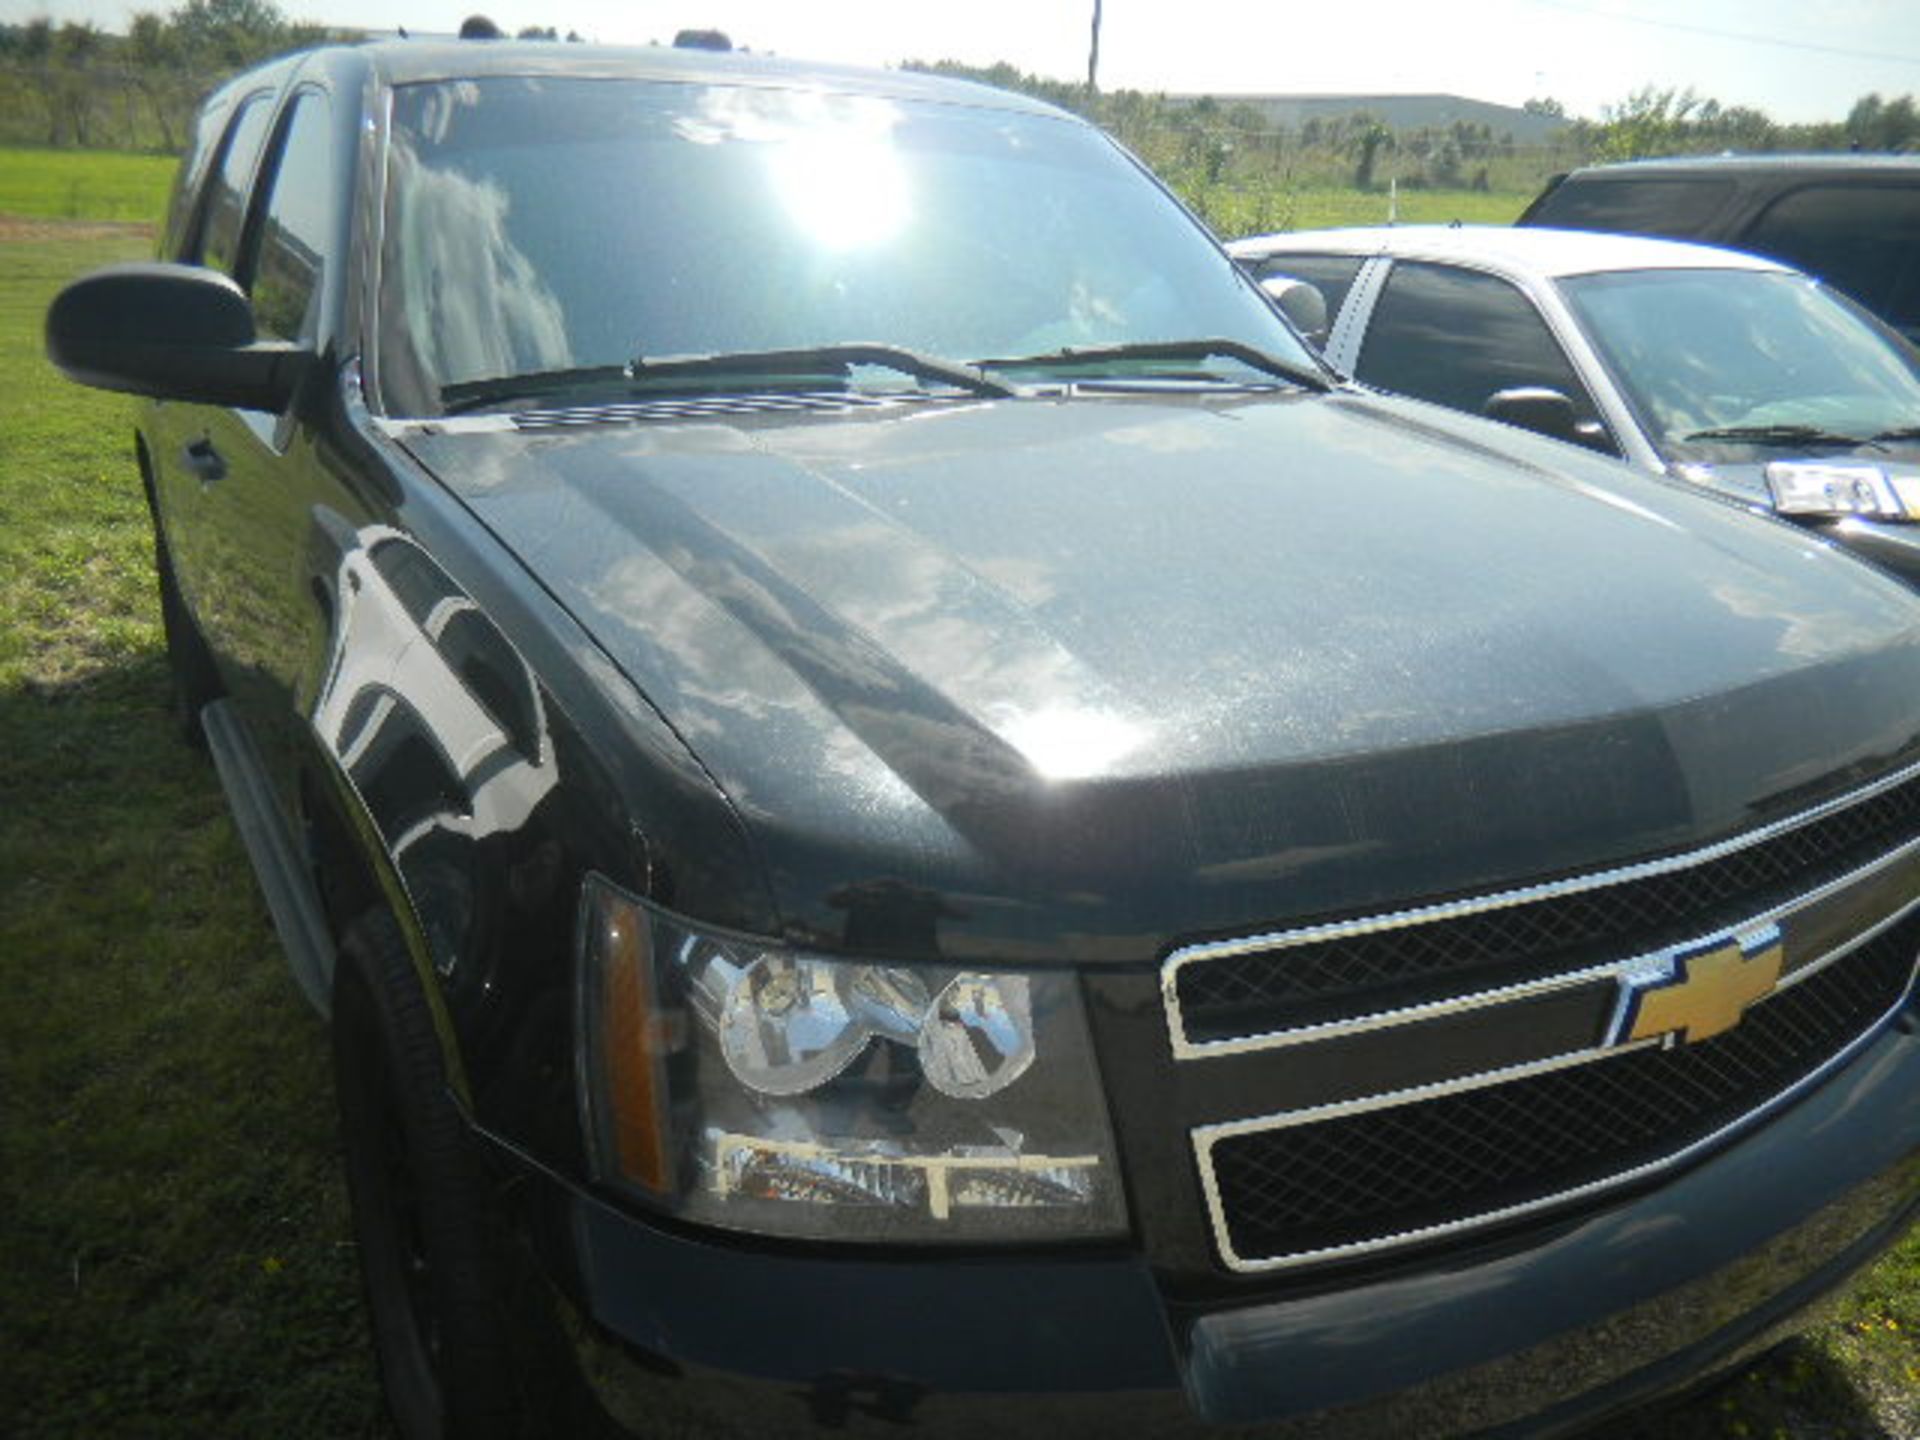 2013 Chevrolet Tahoe SUV Patrol Car - Asset I.D. #899 - Last of Vin (284825)